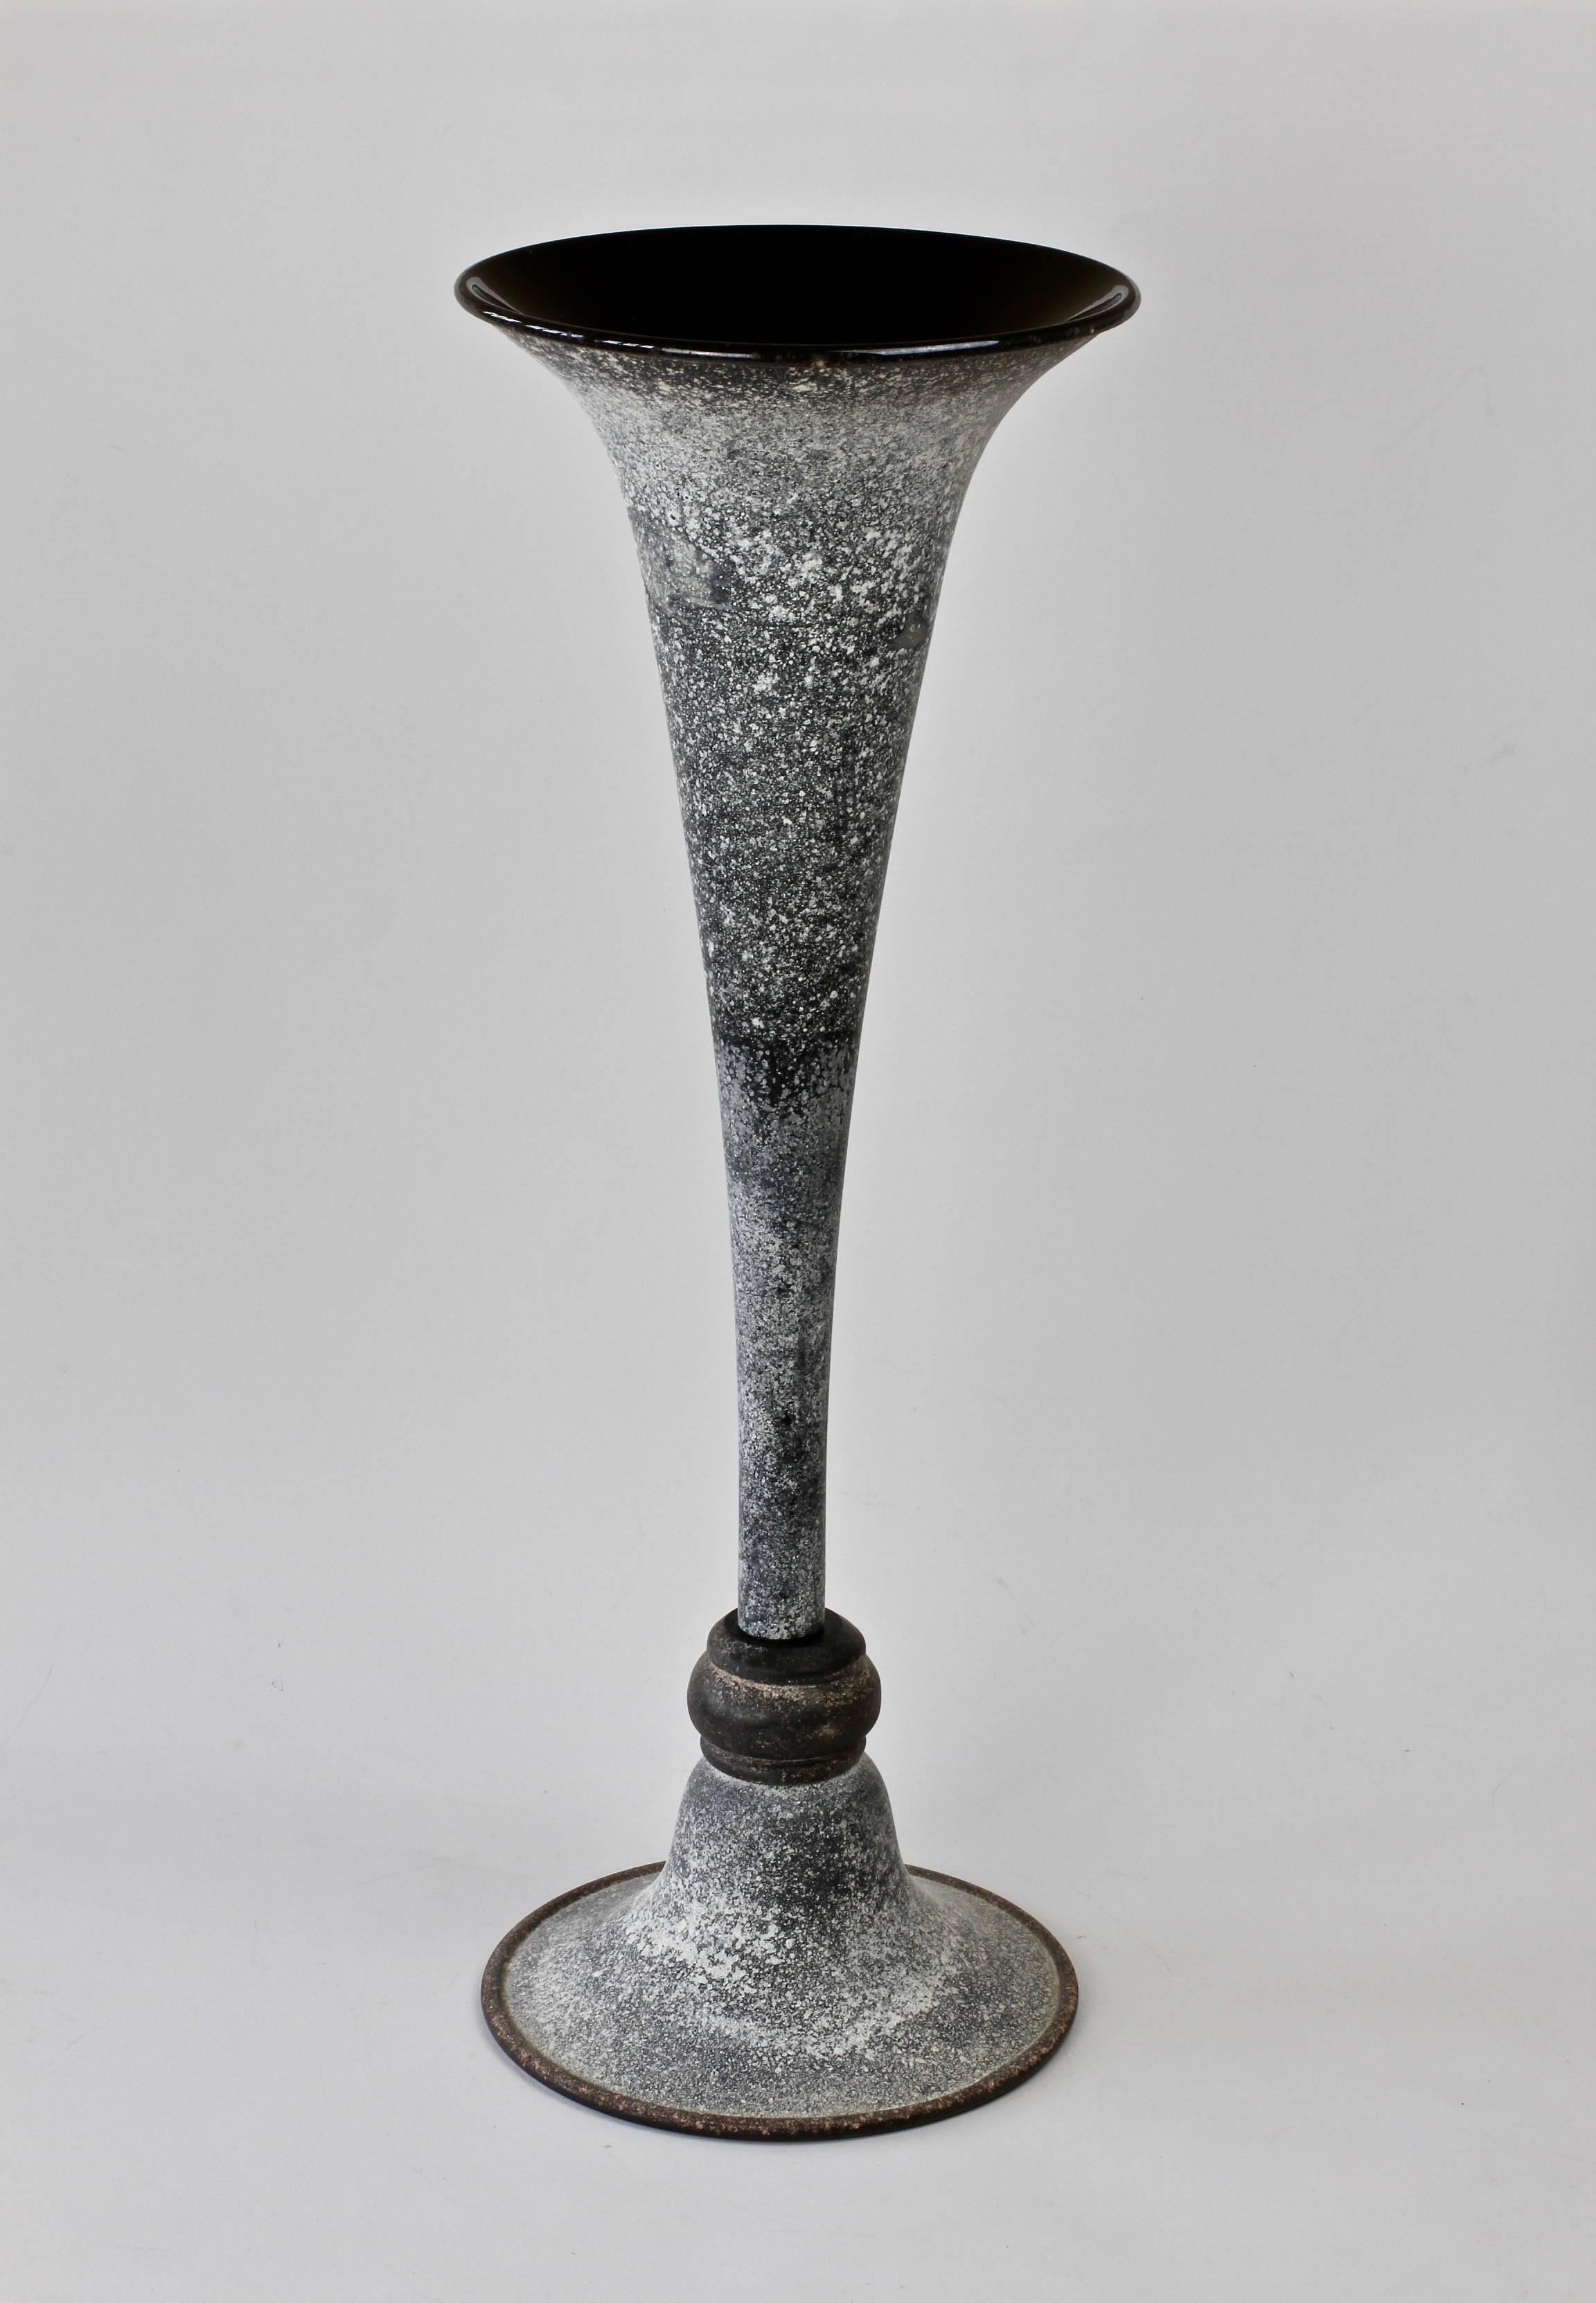 Blown Glass Monumental Black 'A Scavo' Murano Glass Vase Attributed to Seguso Vetri D'Arte